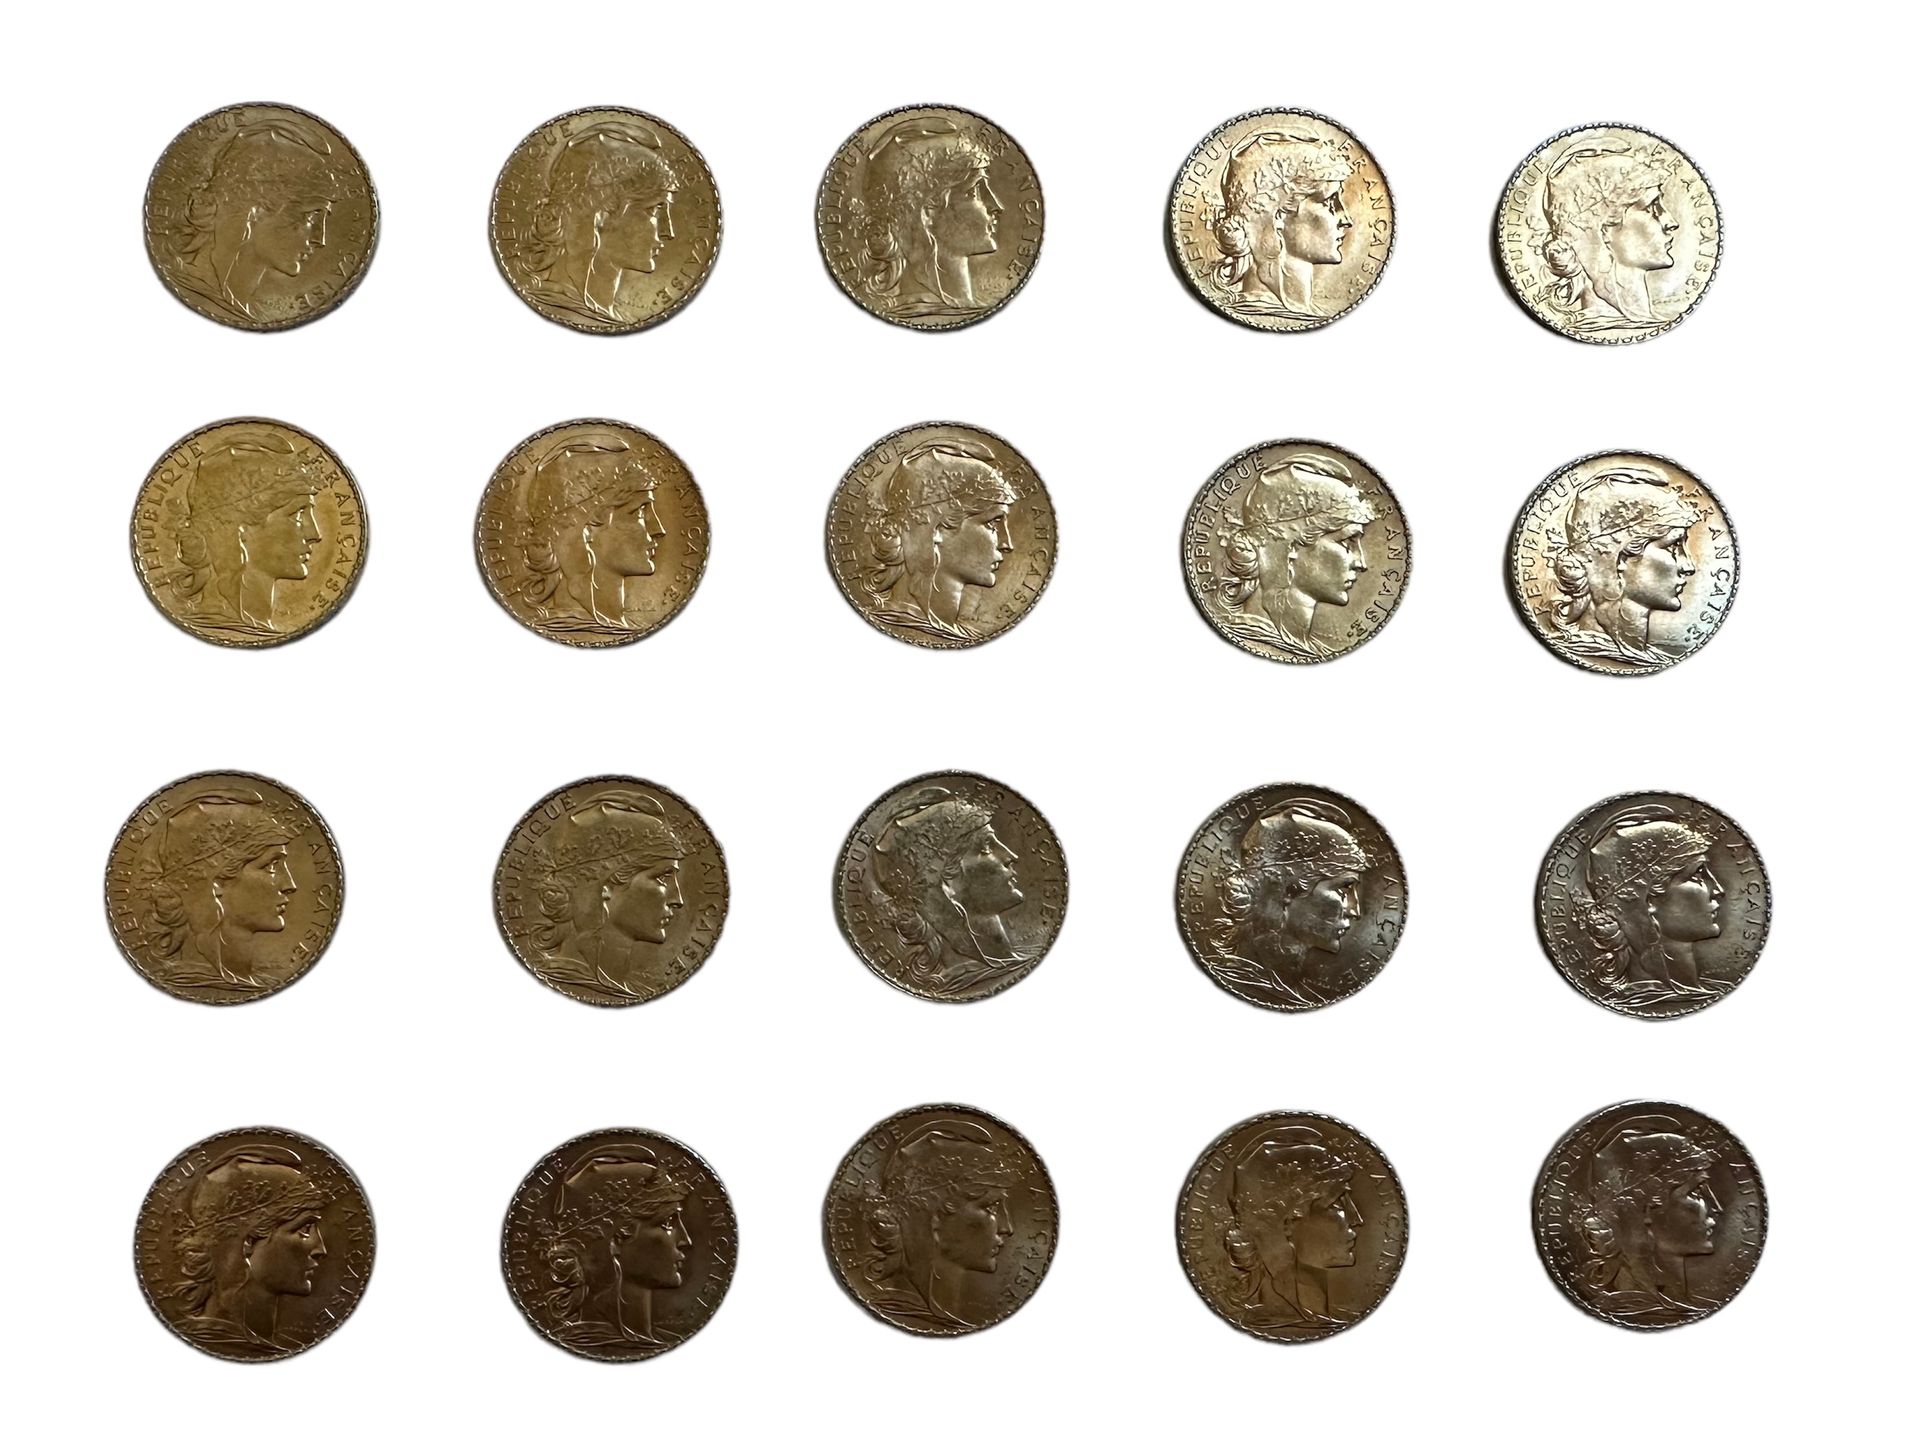 Null FRANCIA
20 monete d'oro da 20 franchi con gallo
Peso: 129 g